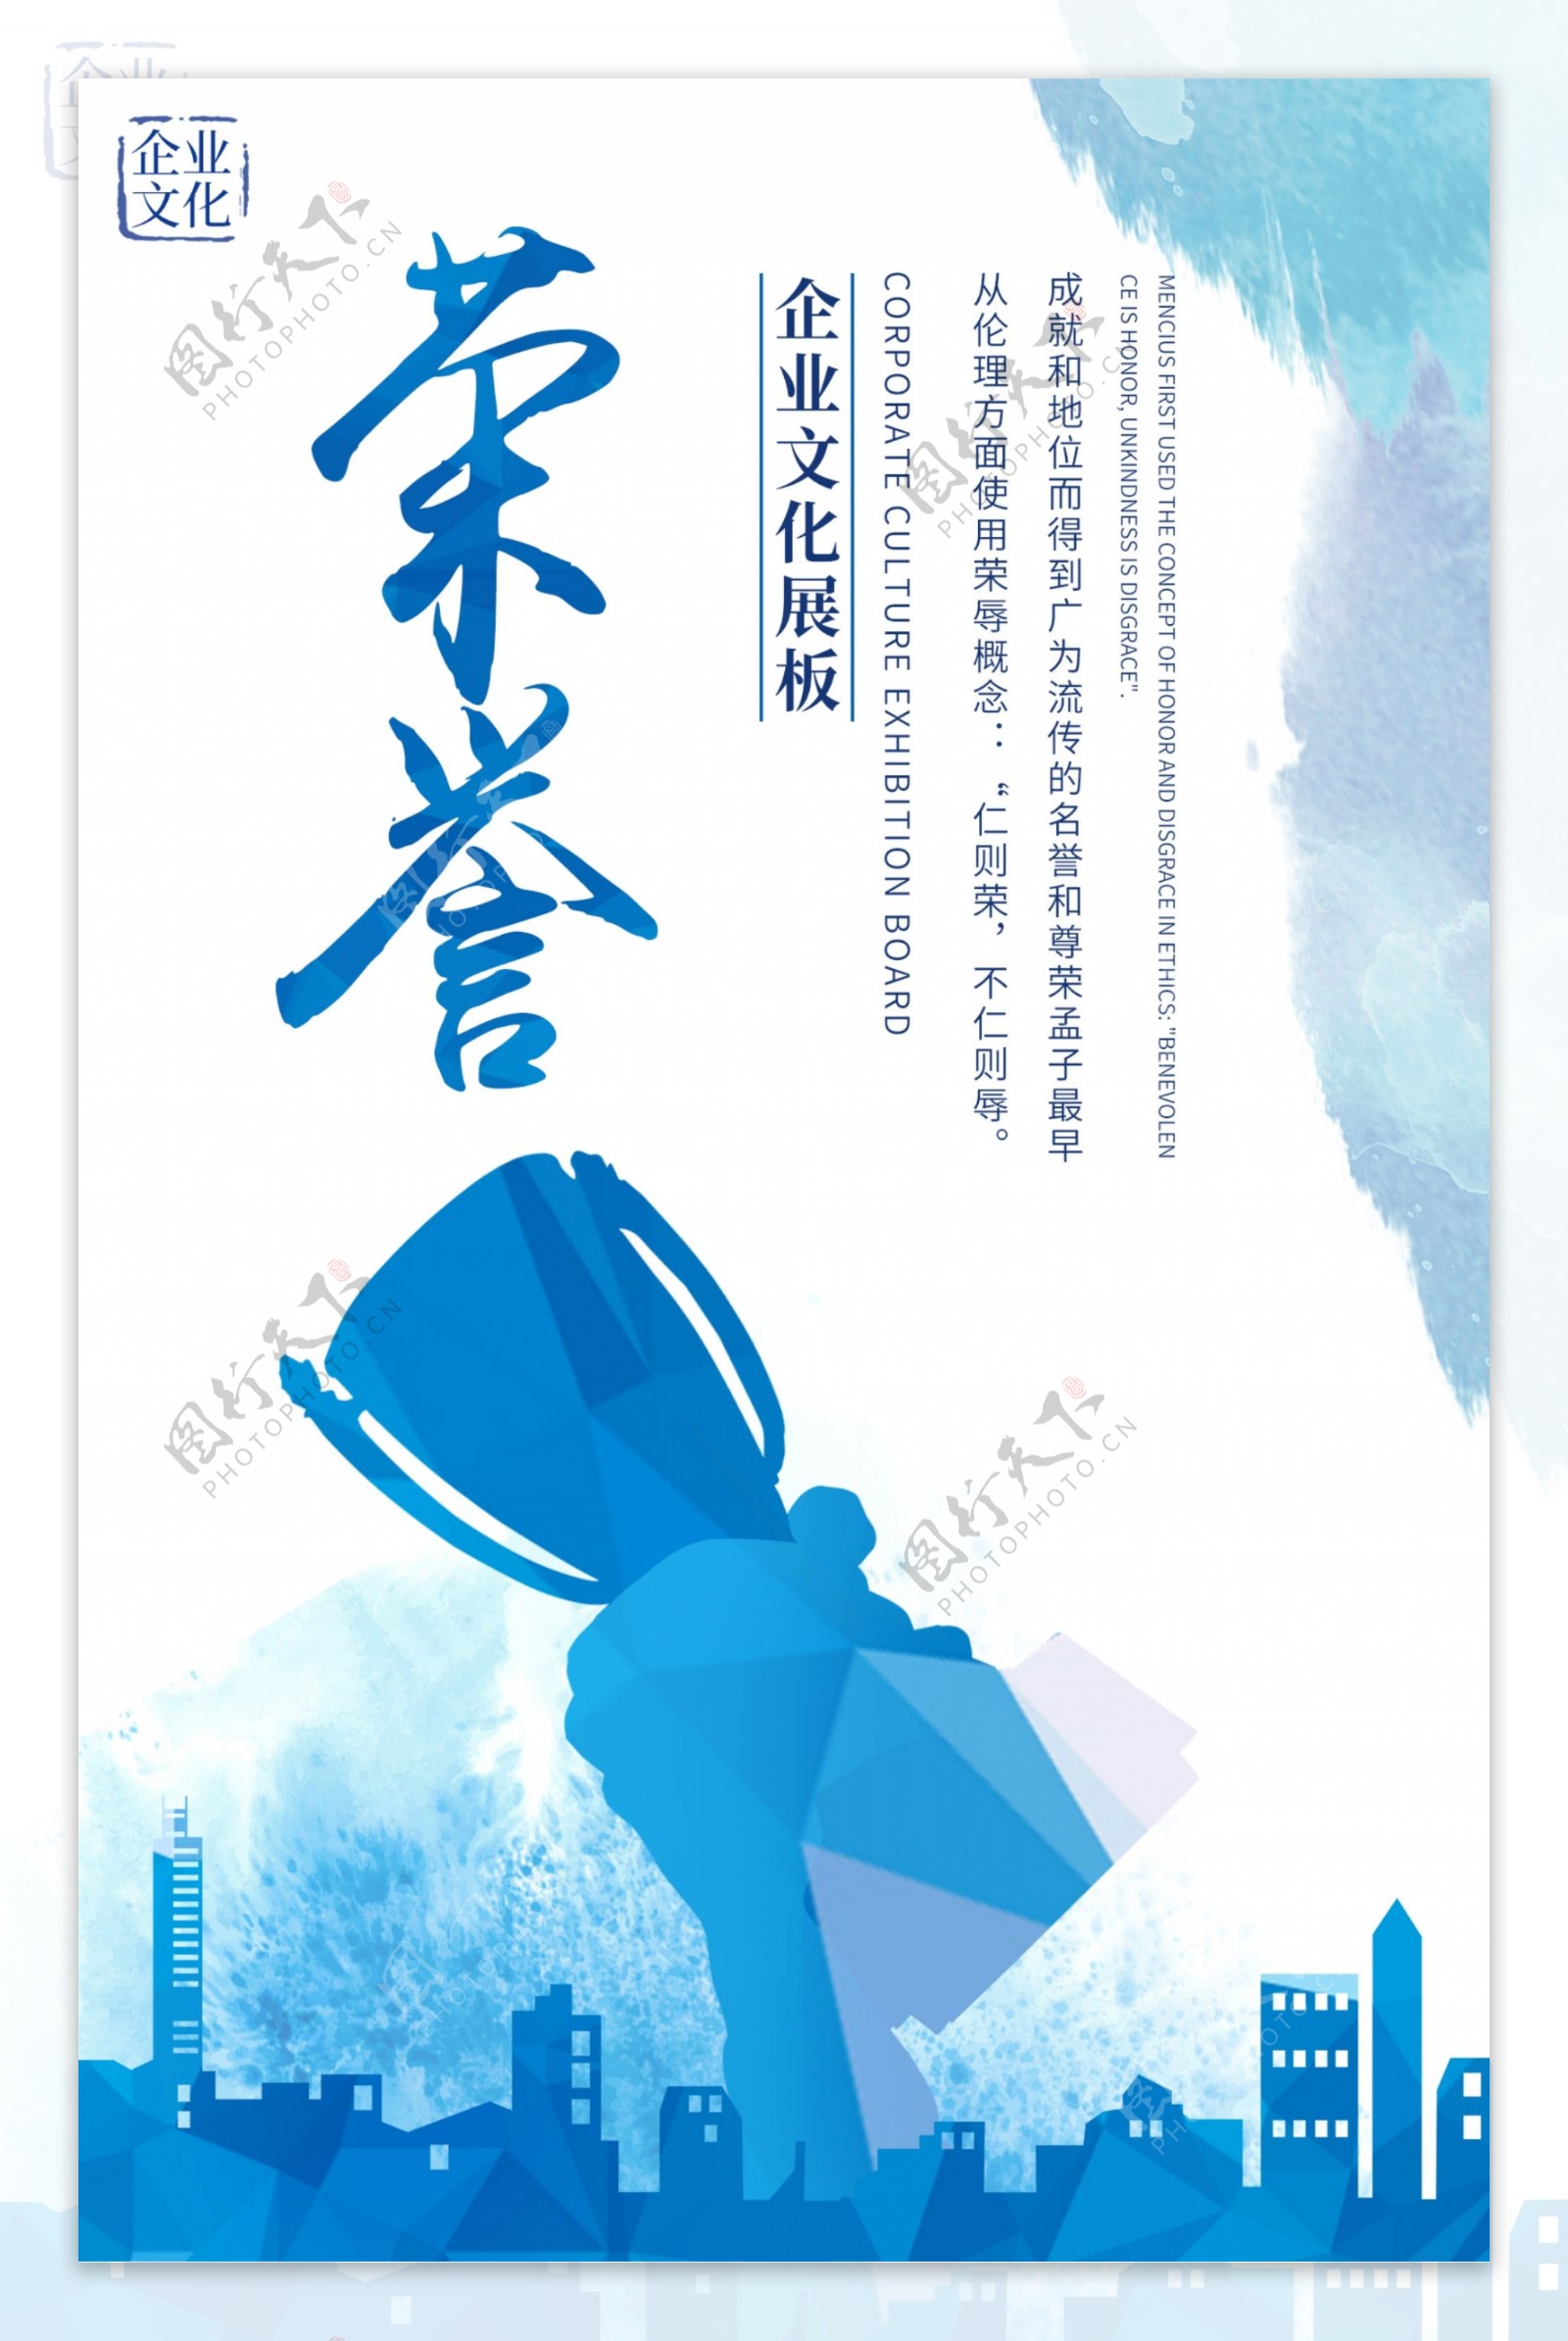 简约大气中国风企业文化标语系列展板